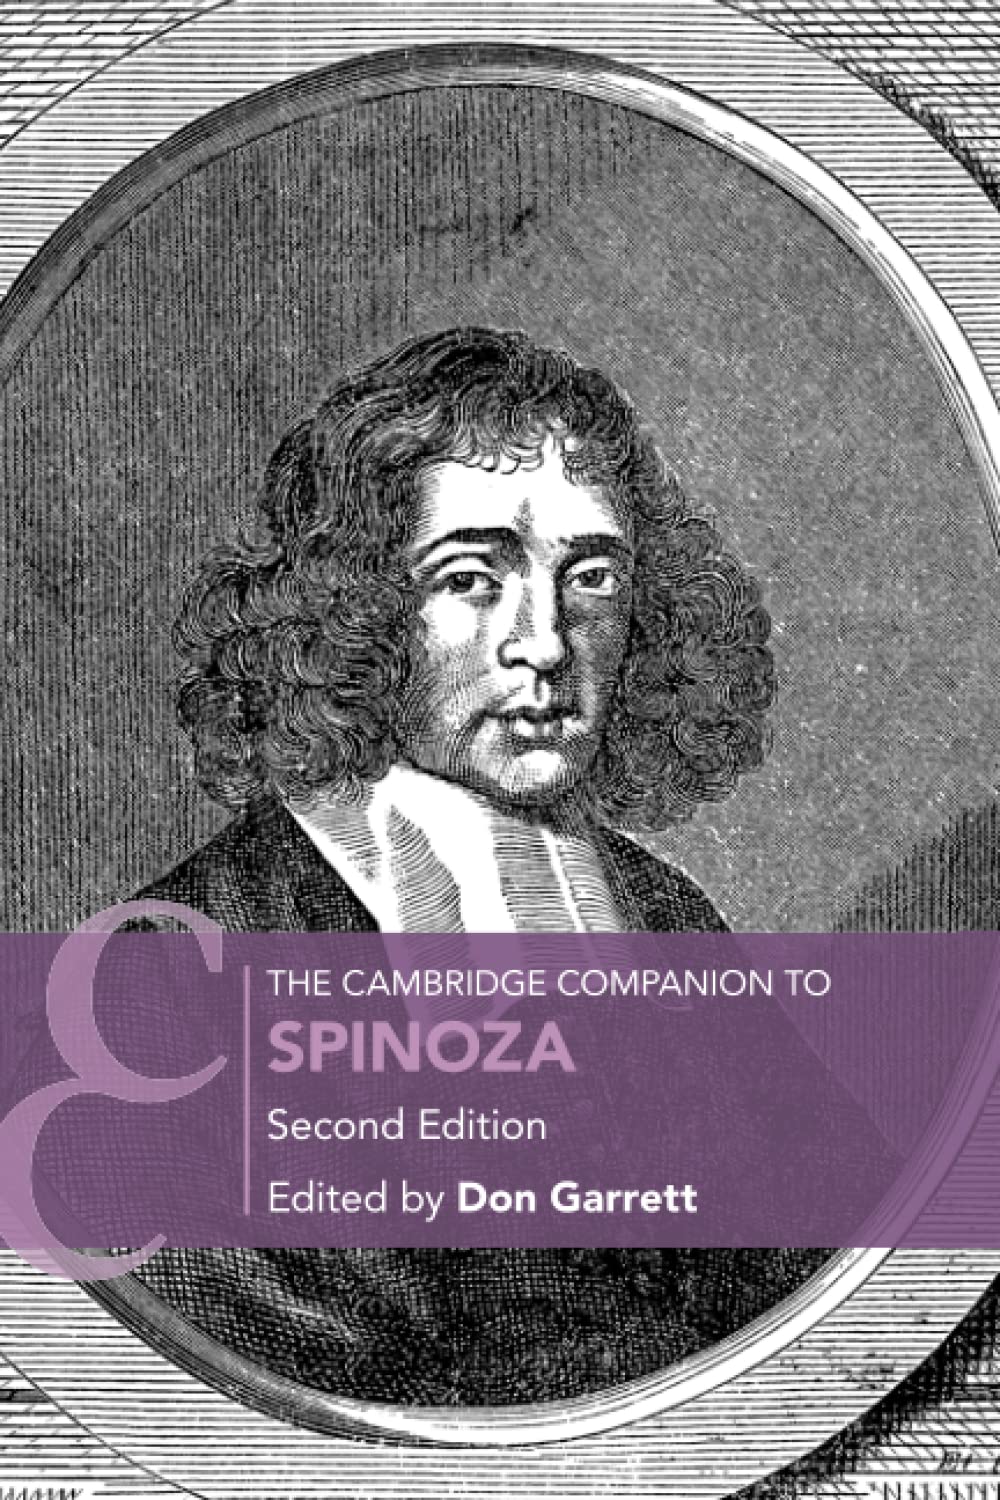  The Cambridge Companion to Spinoza